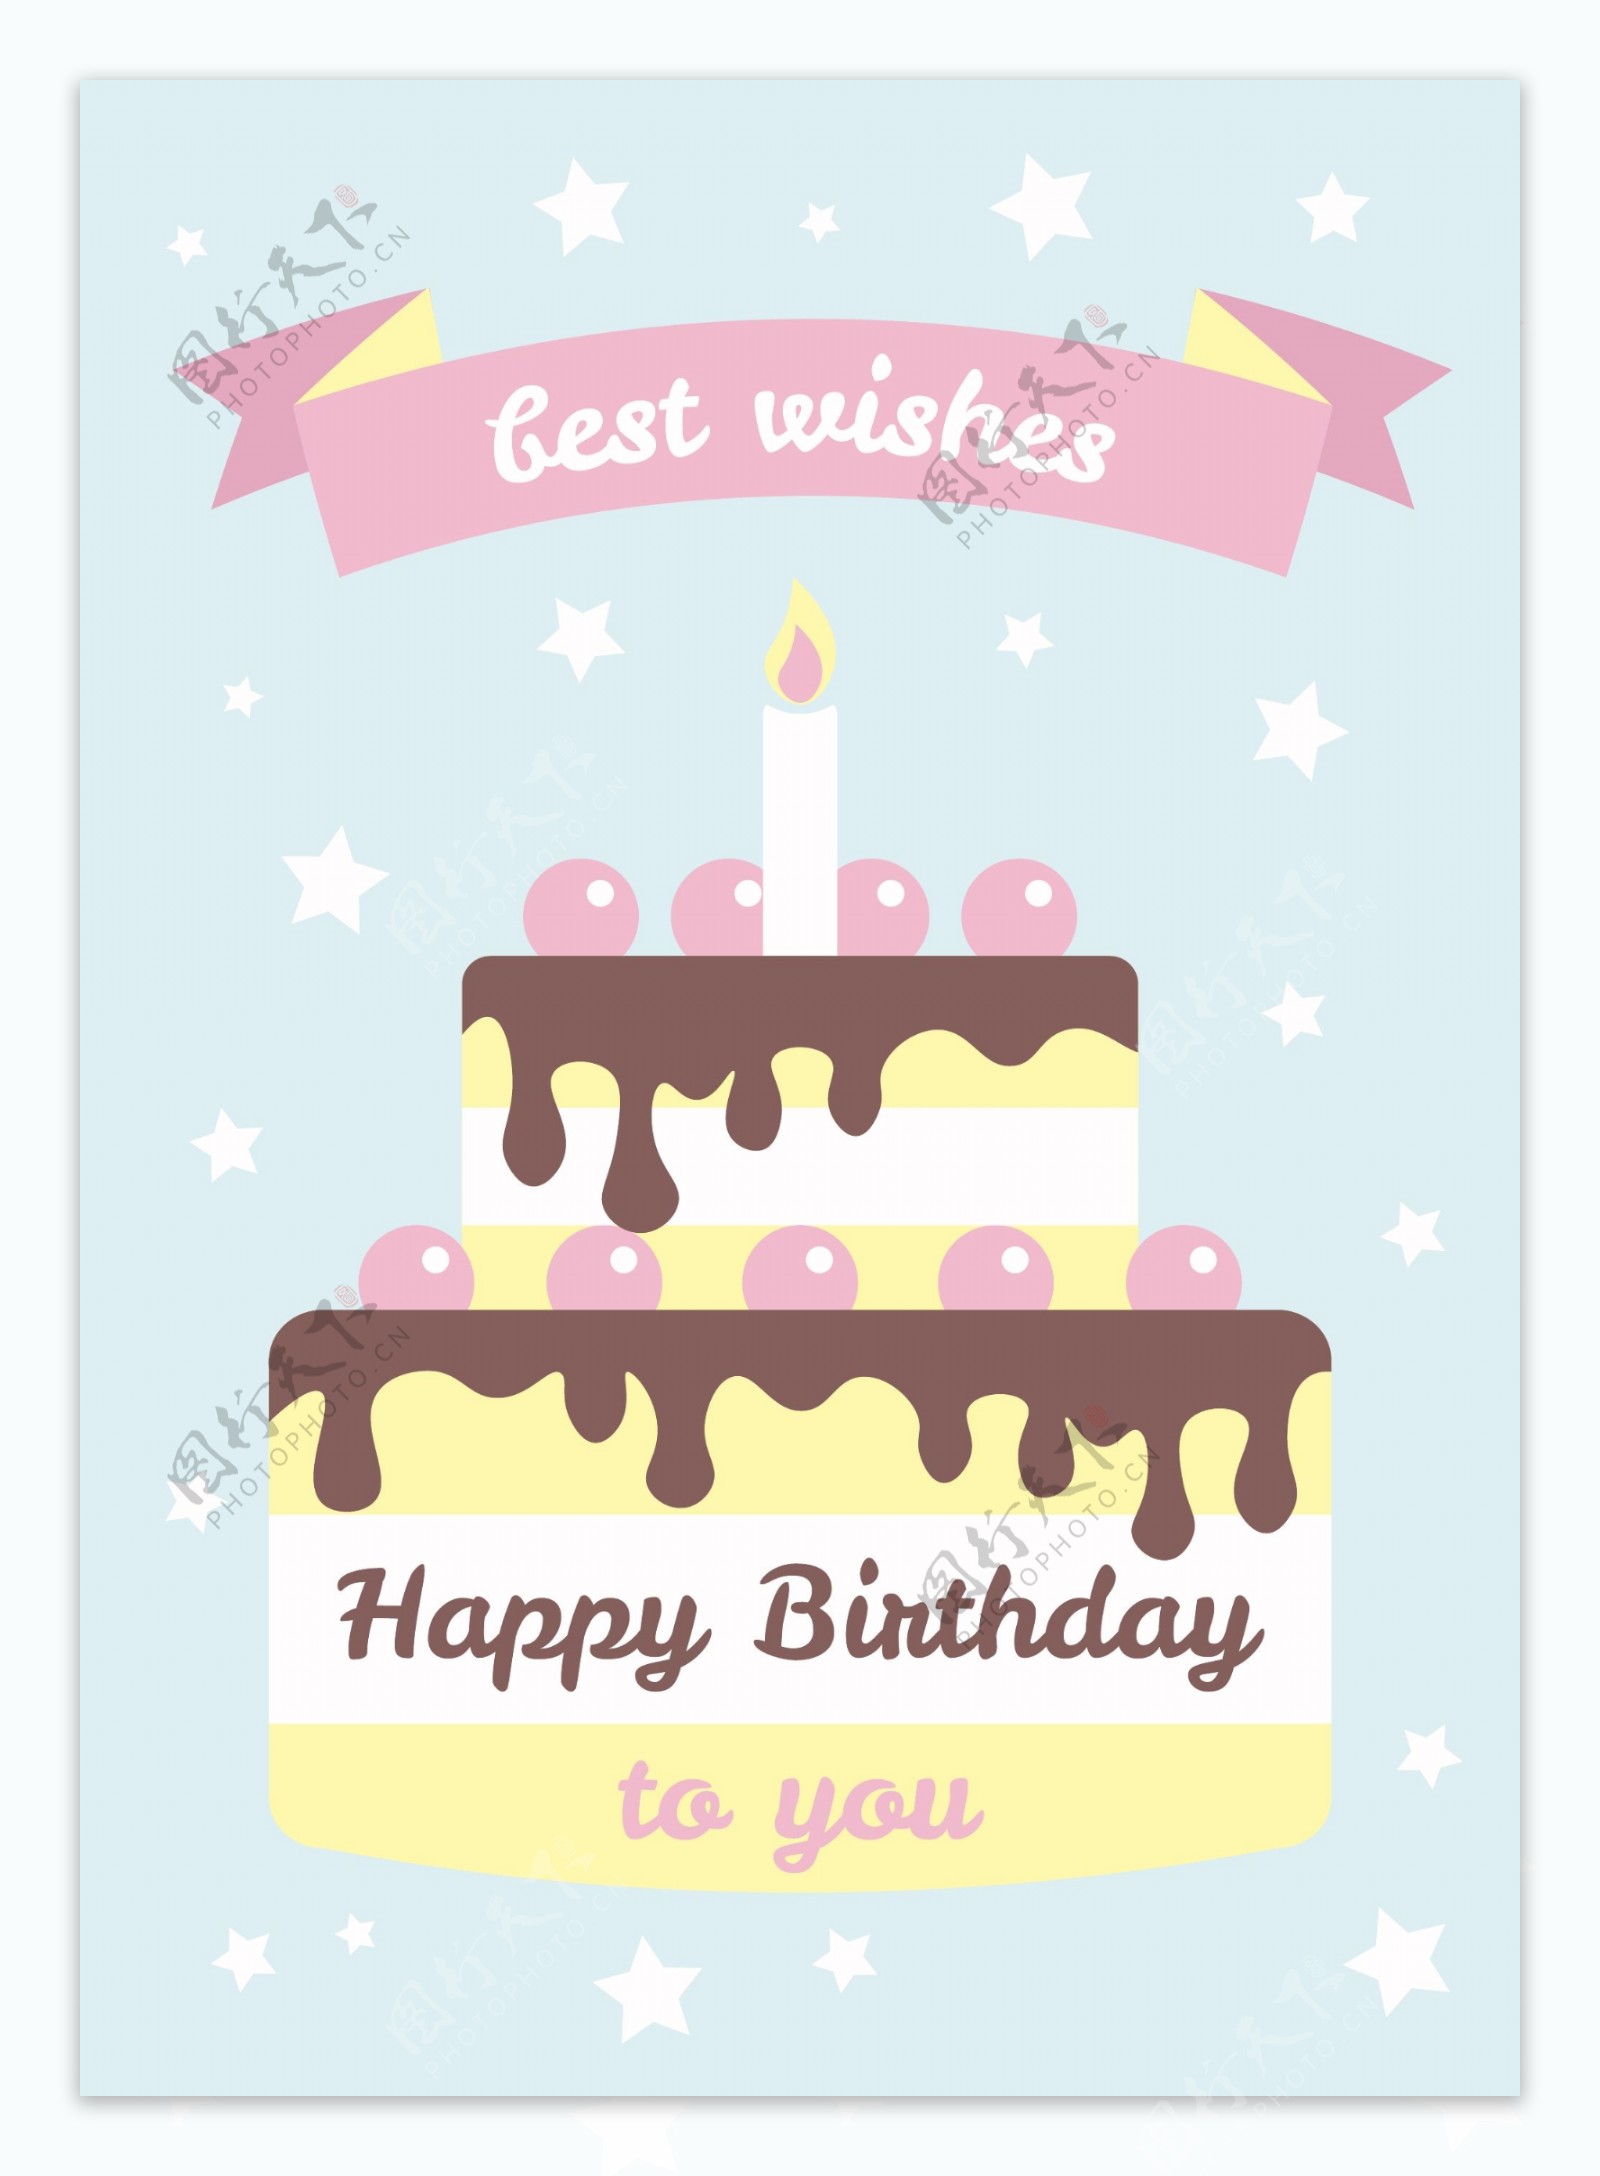 柔和的颜色的生日蛋糕卡